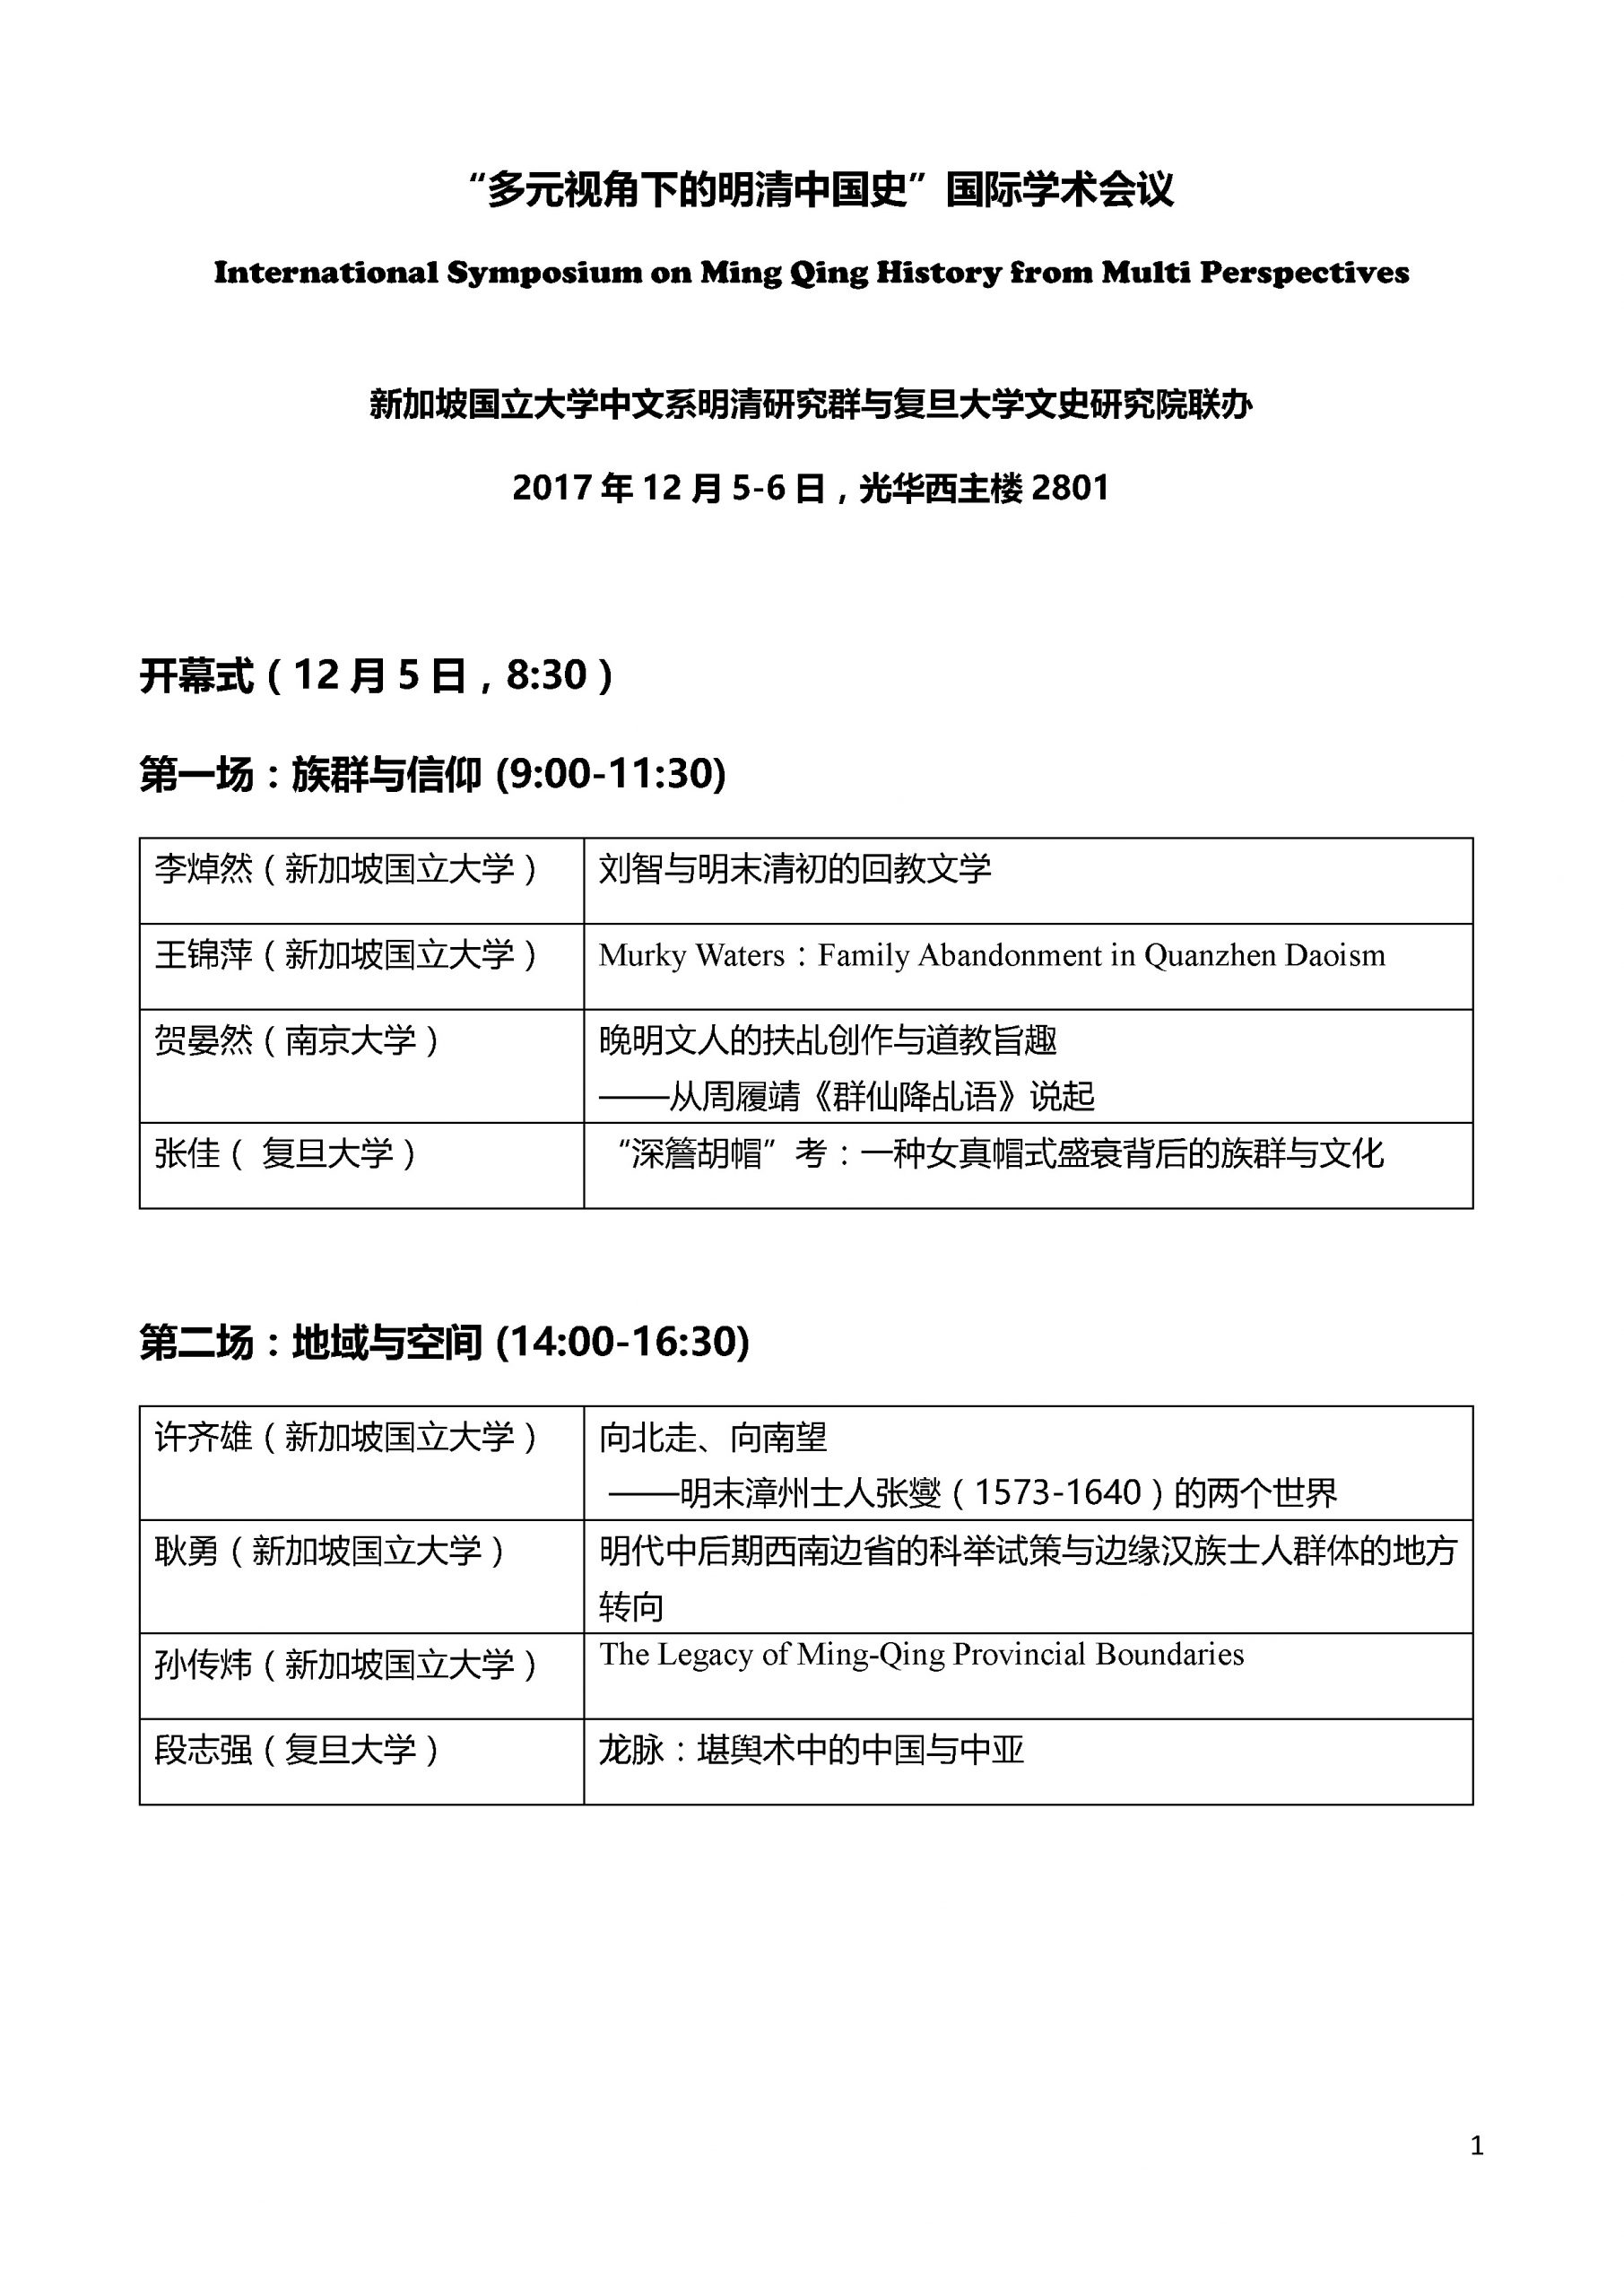 Ming Qing Symposium 2017_Page_1